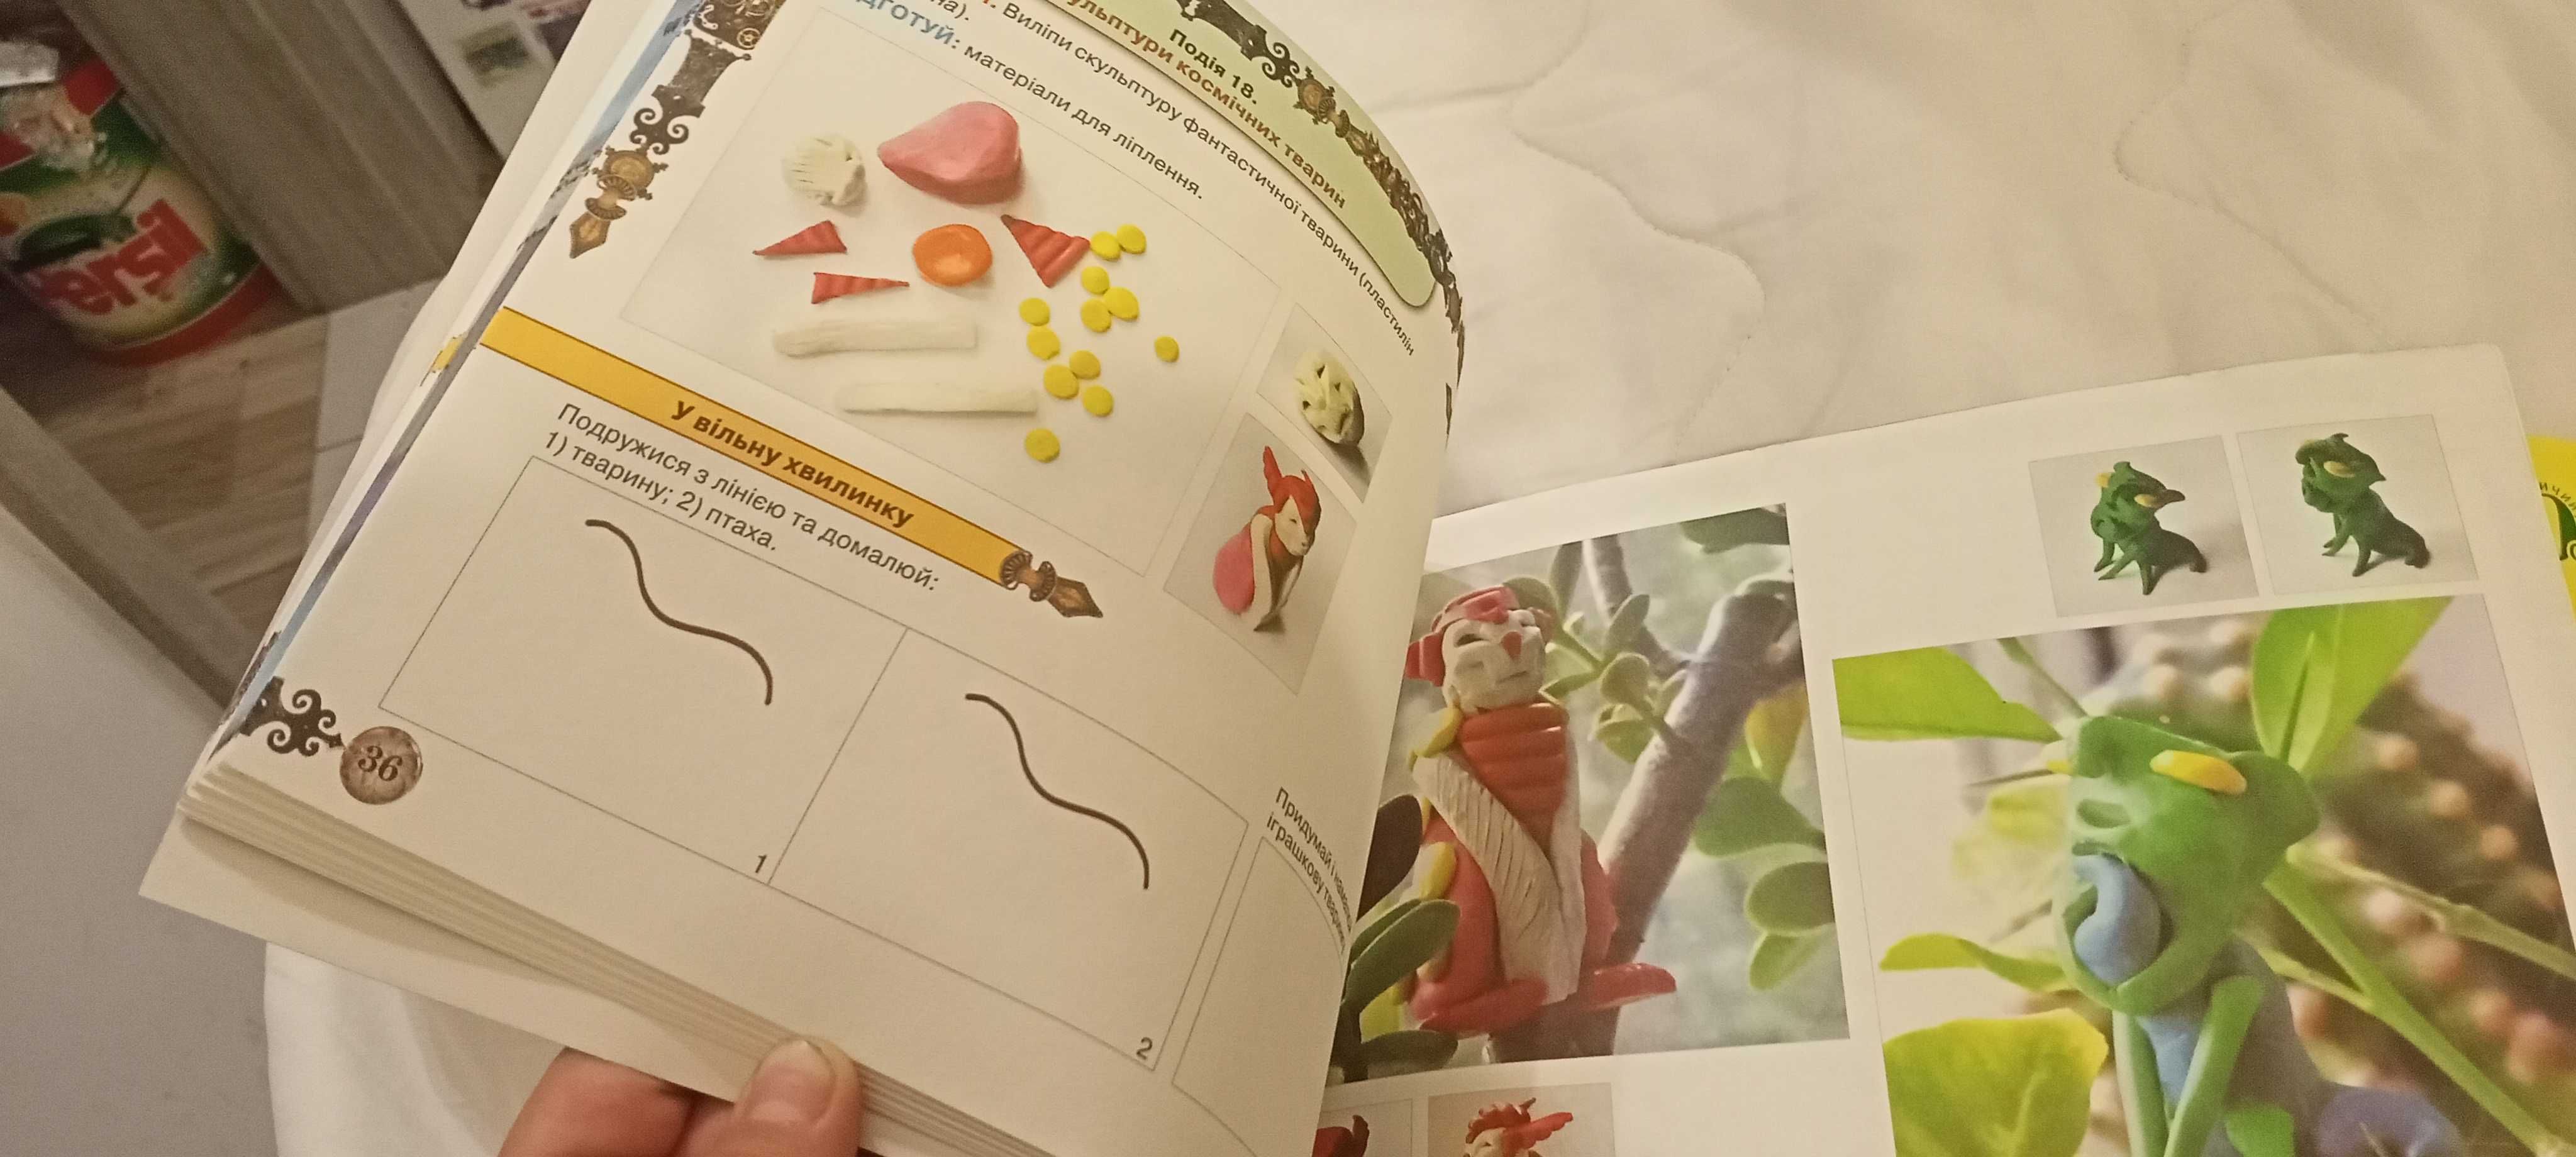 Książka dla klasy 5 w języku ukraińskim